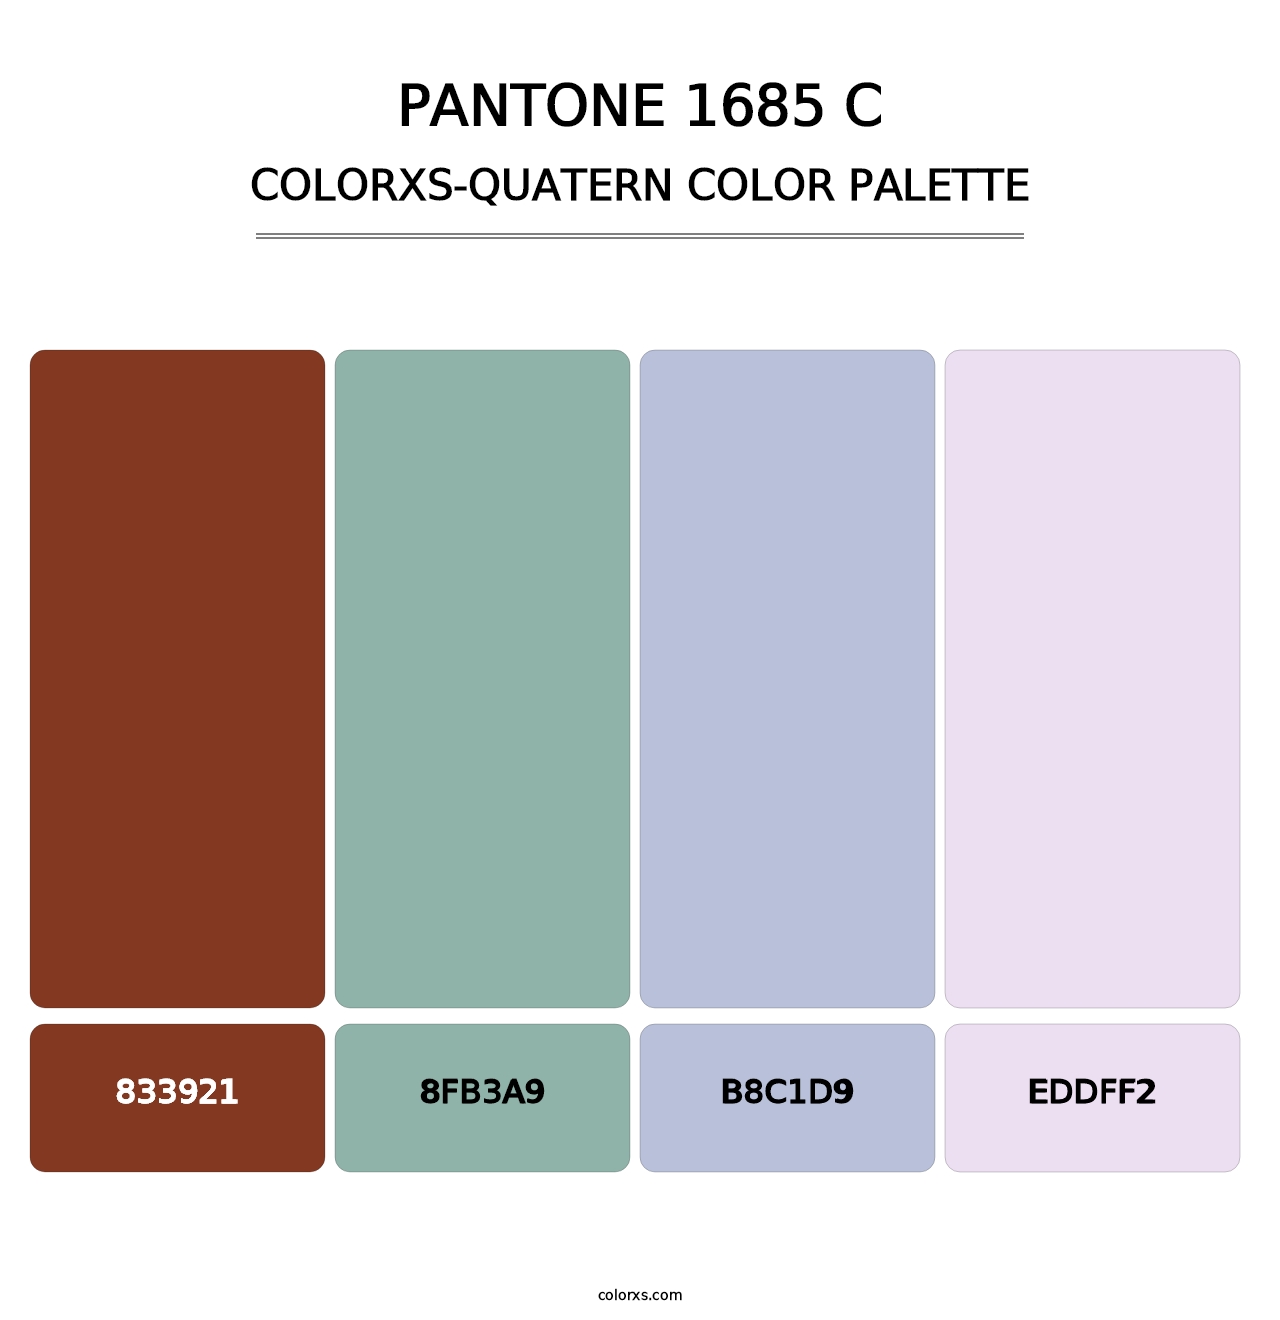 PANTONE 1685 C - Colorxs Quatern Palette